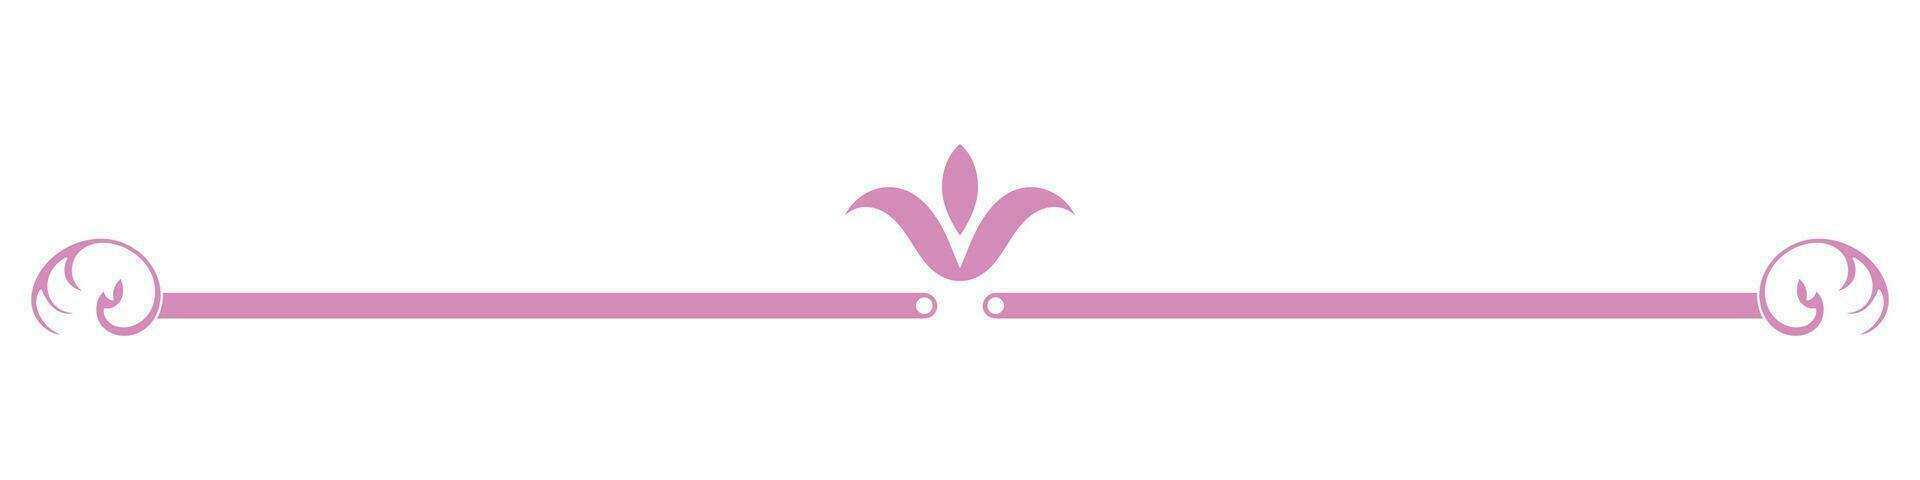 magro Vintage ▾ Linee. rosa per il confine linea vettore